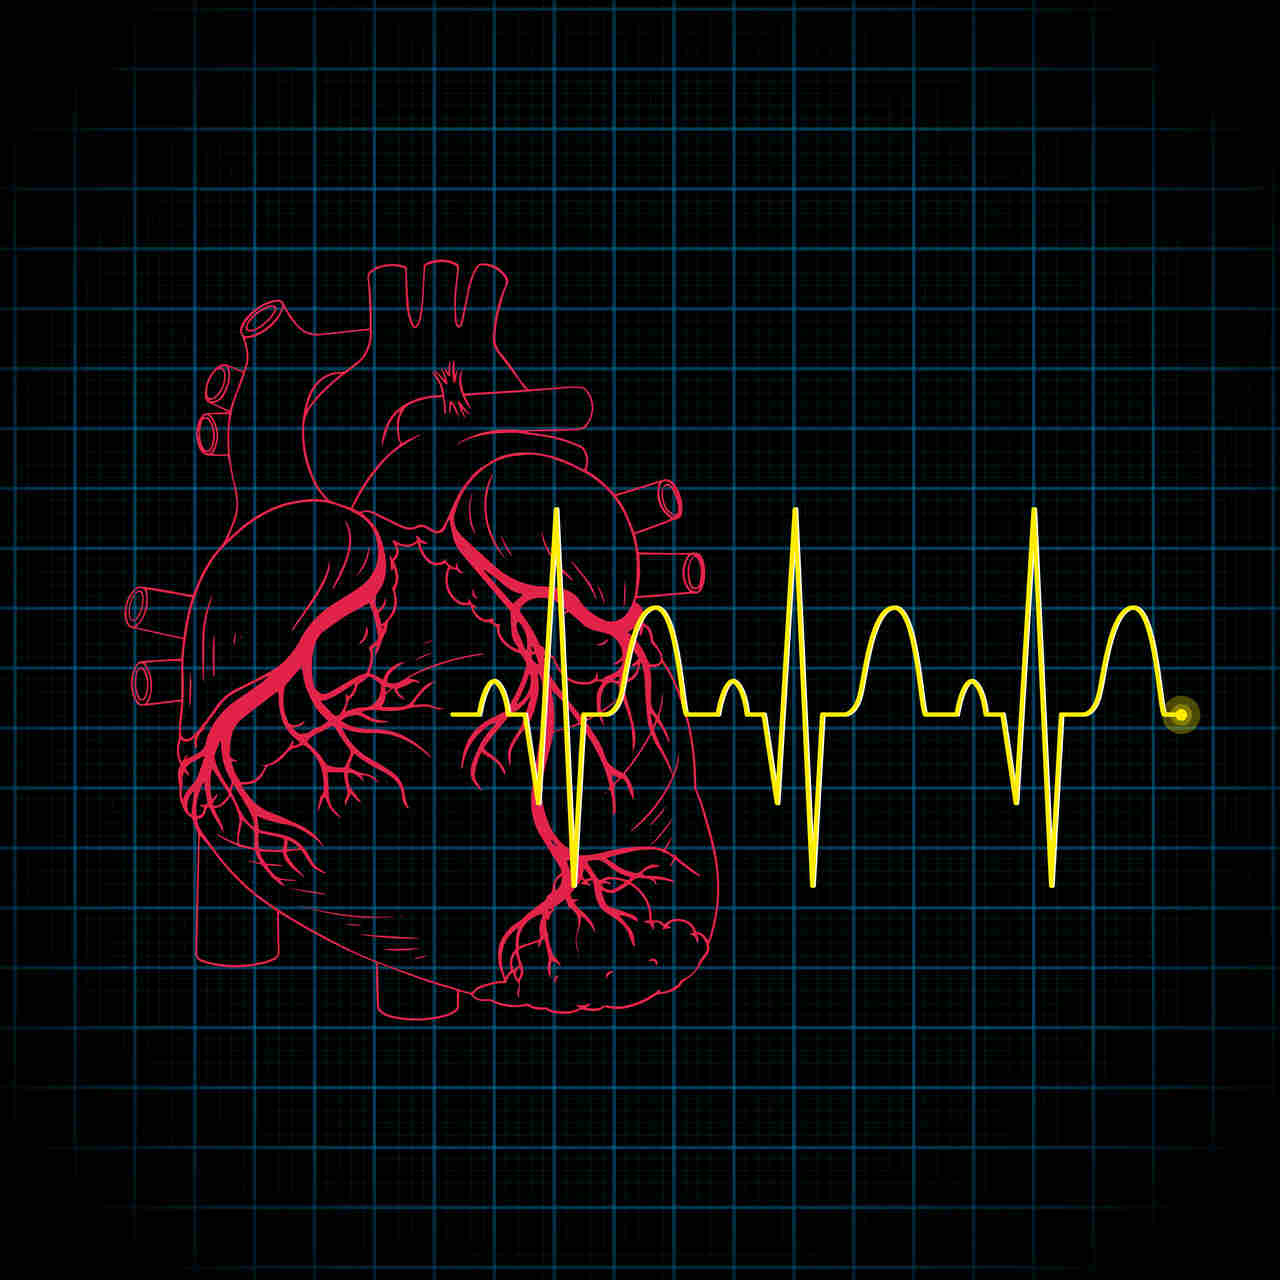 Centro de Imagem Aparecida de Goiânia - Eletrocardiograma: check up do coração e pré-operatório